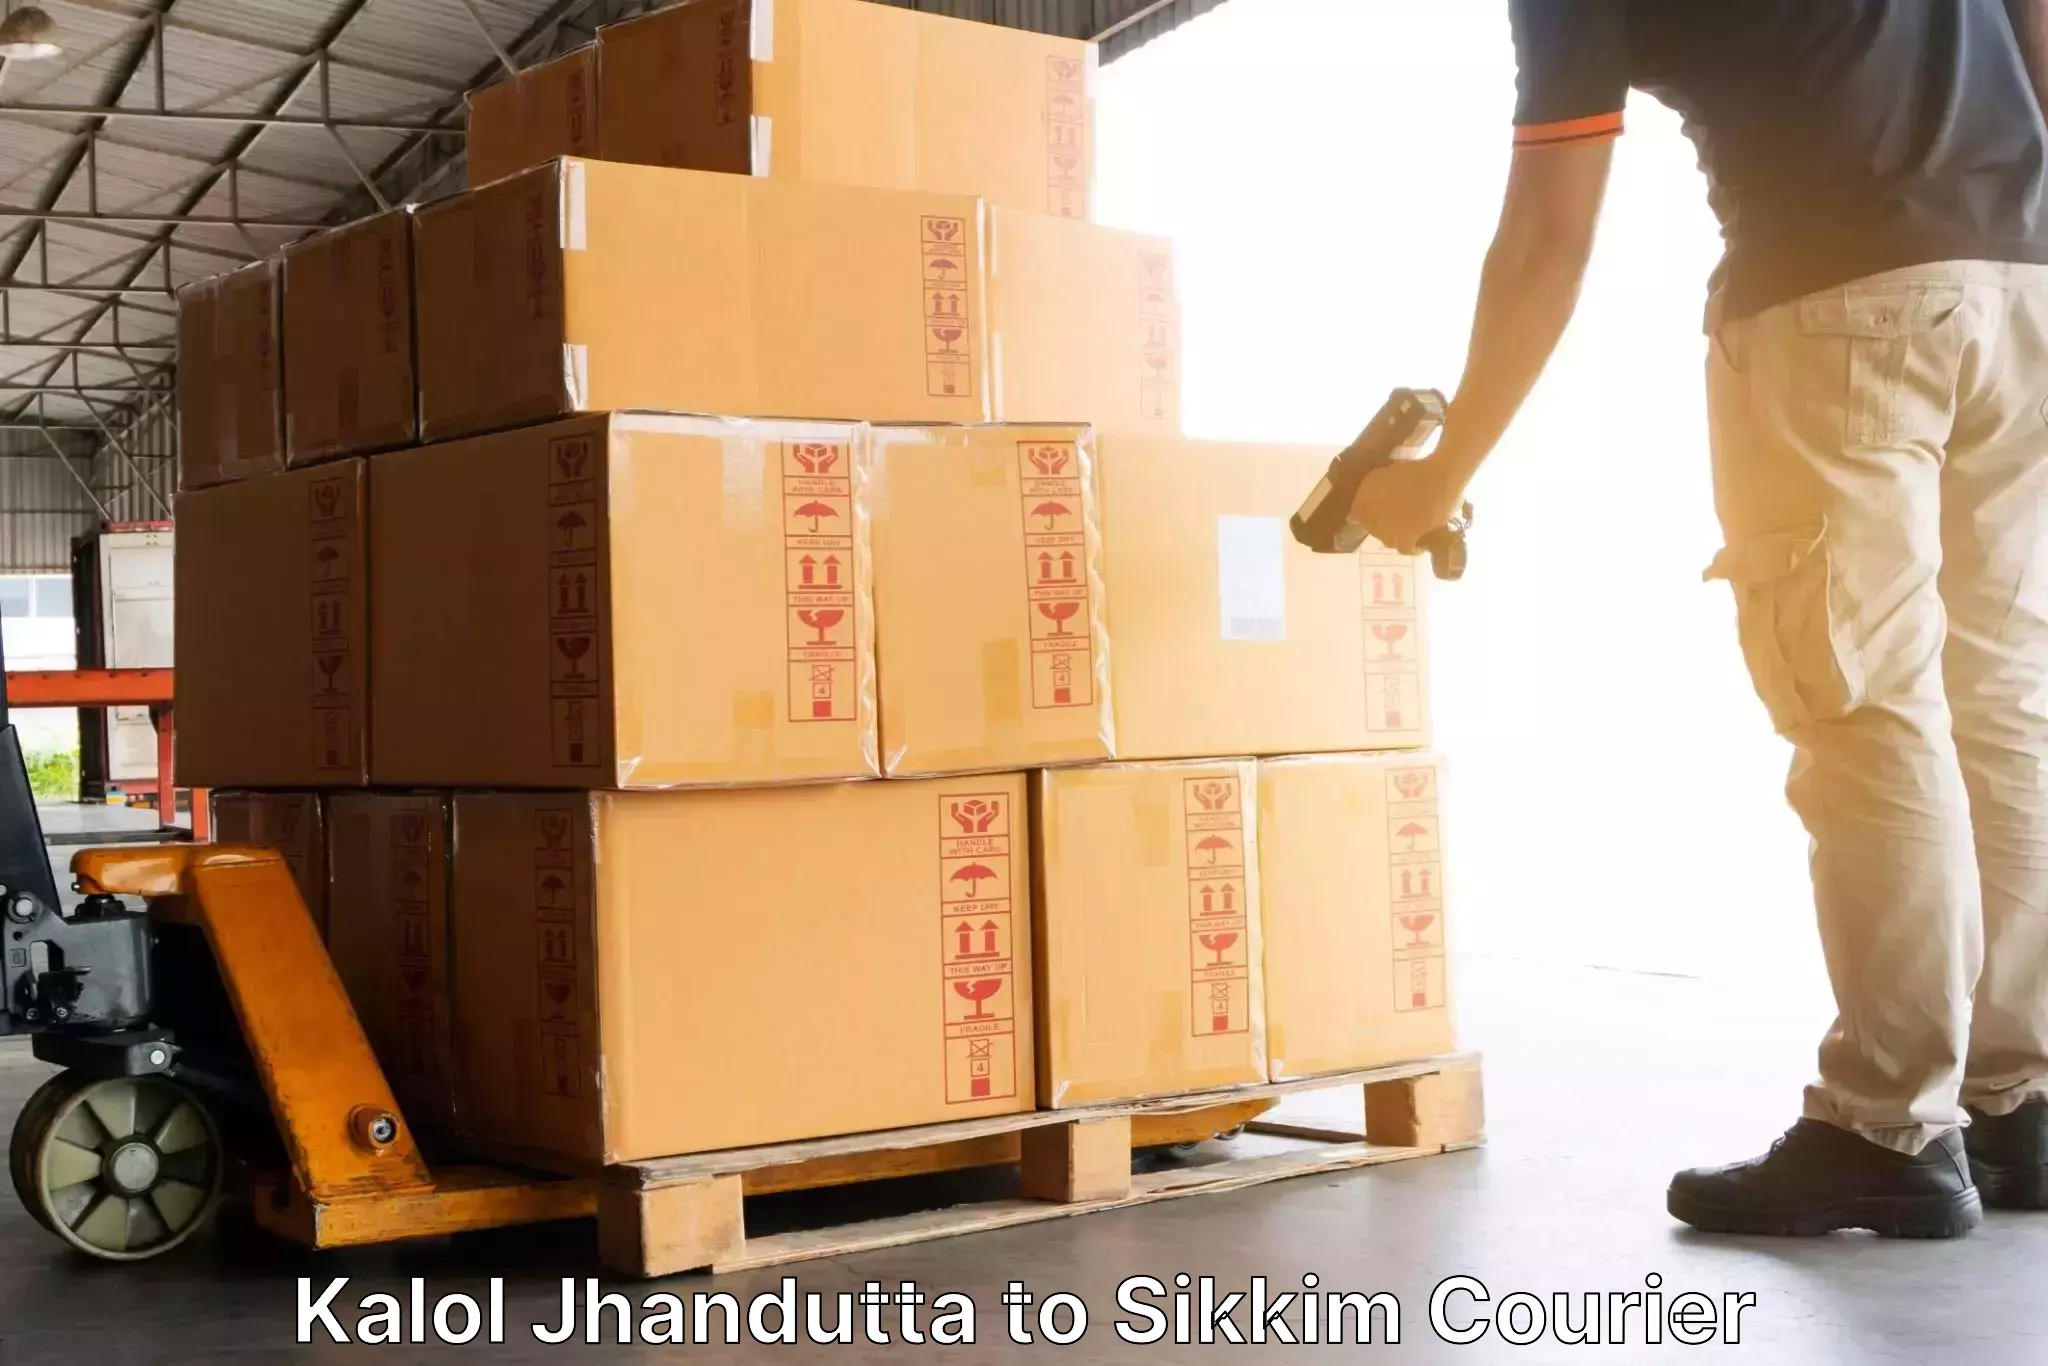 Personal parcel delivery in Kalol Jhandutta to Ravangla